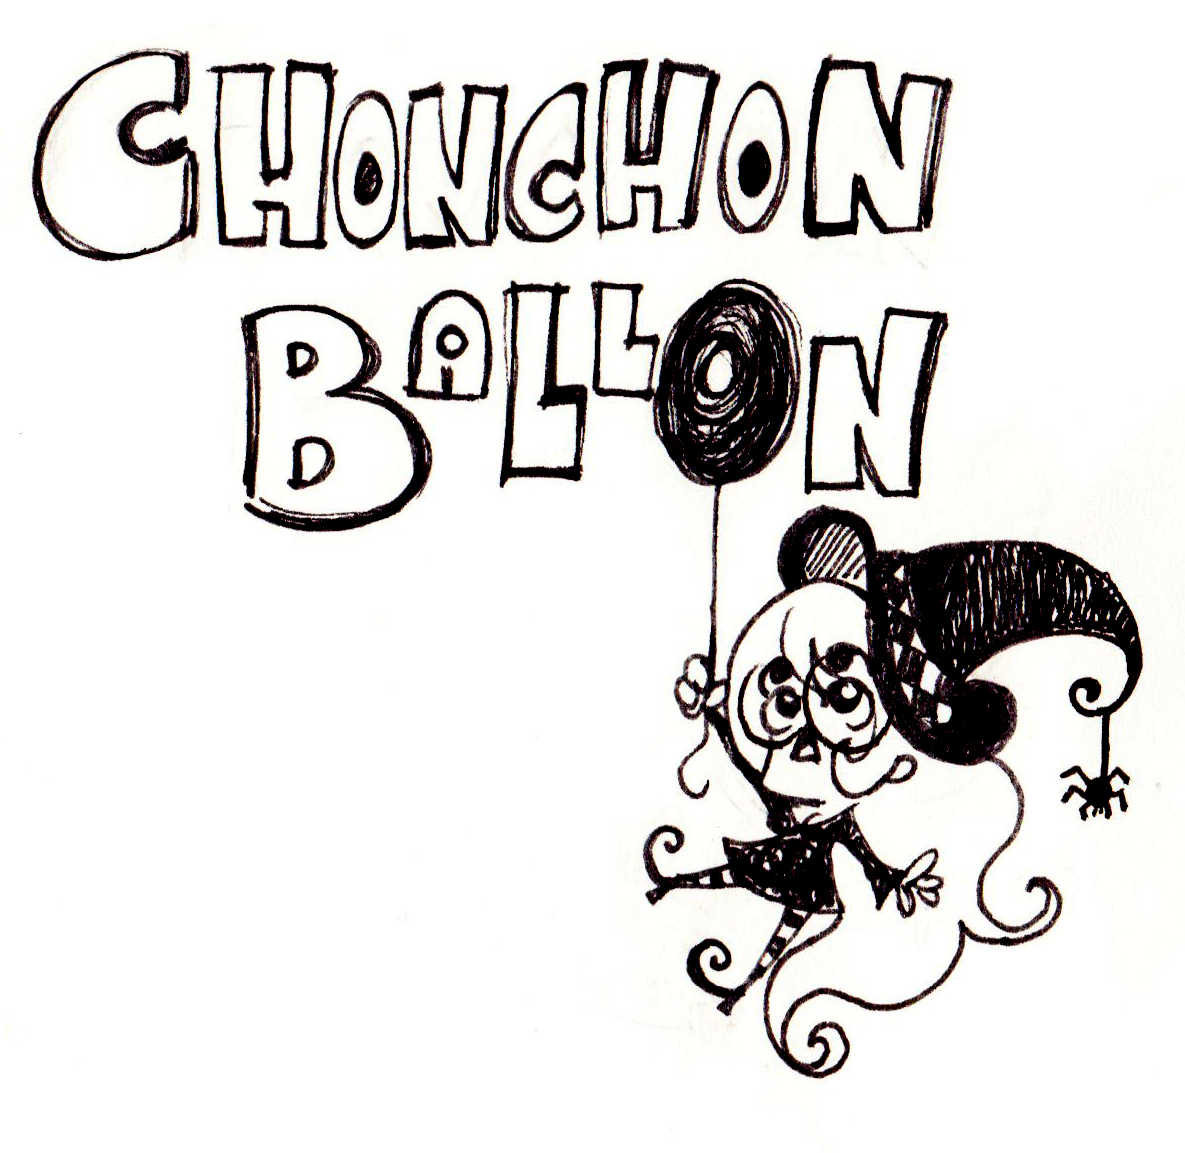 Chonchon Ballon